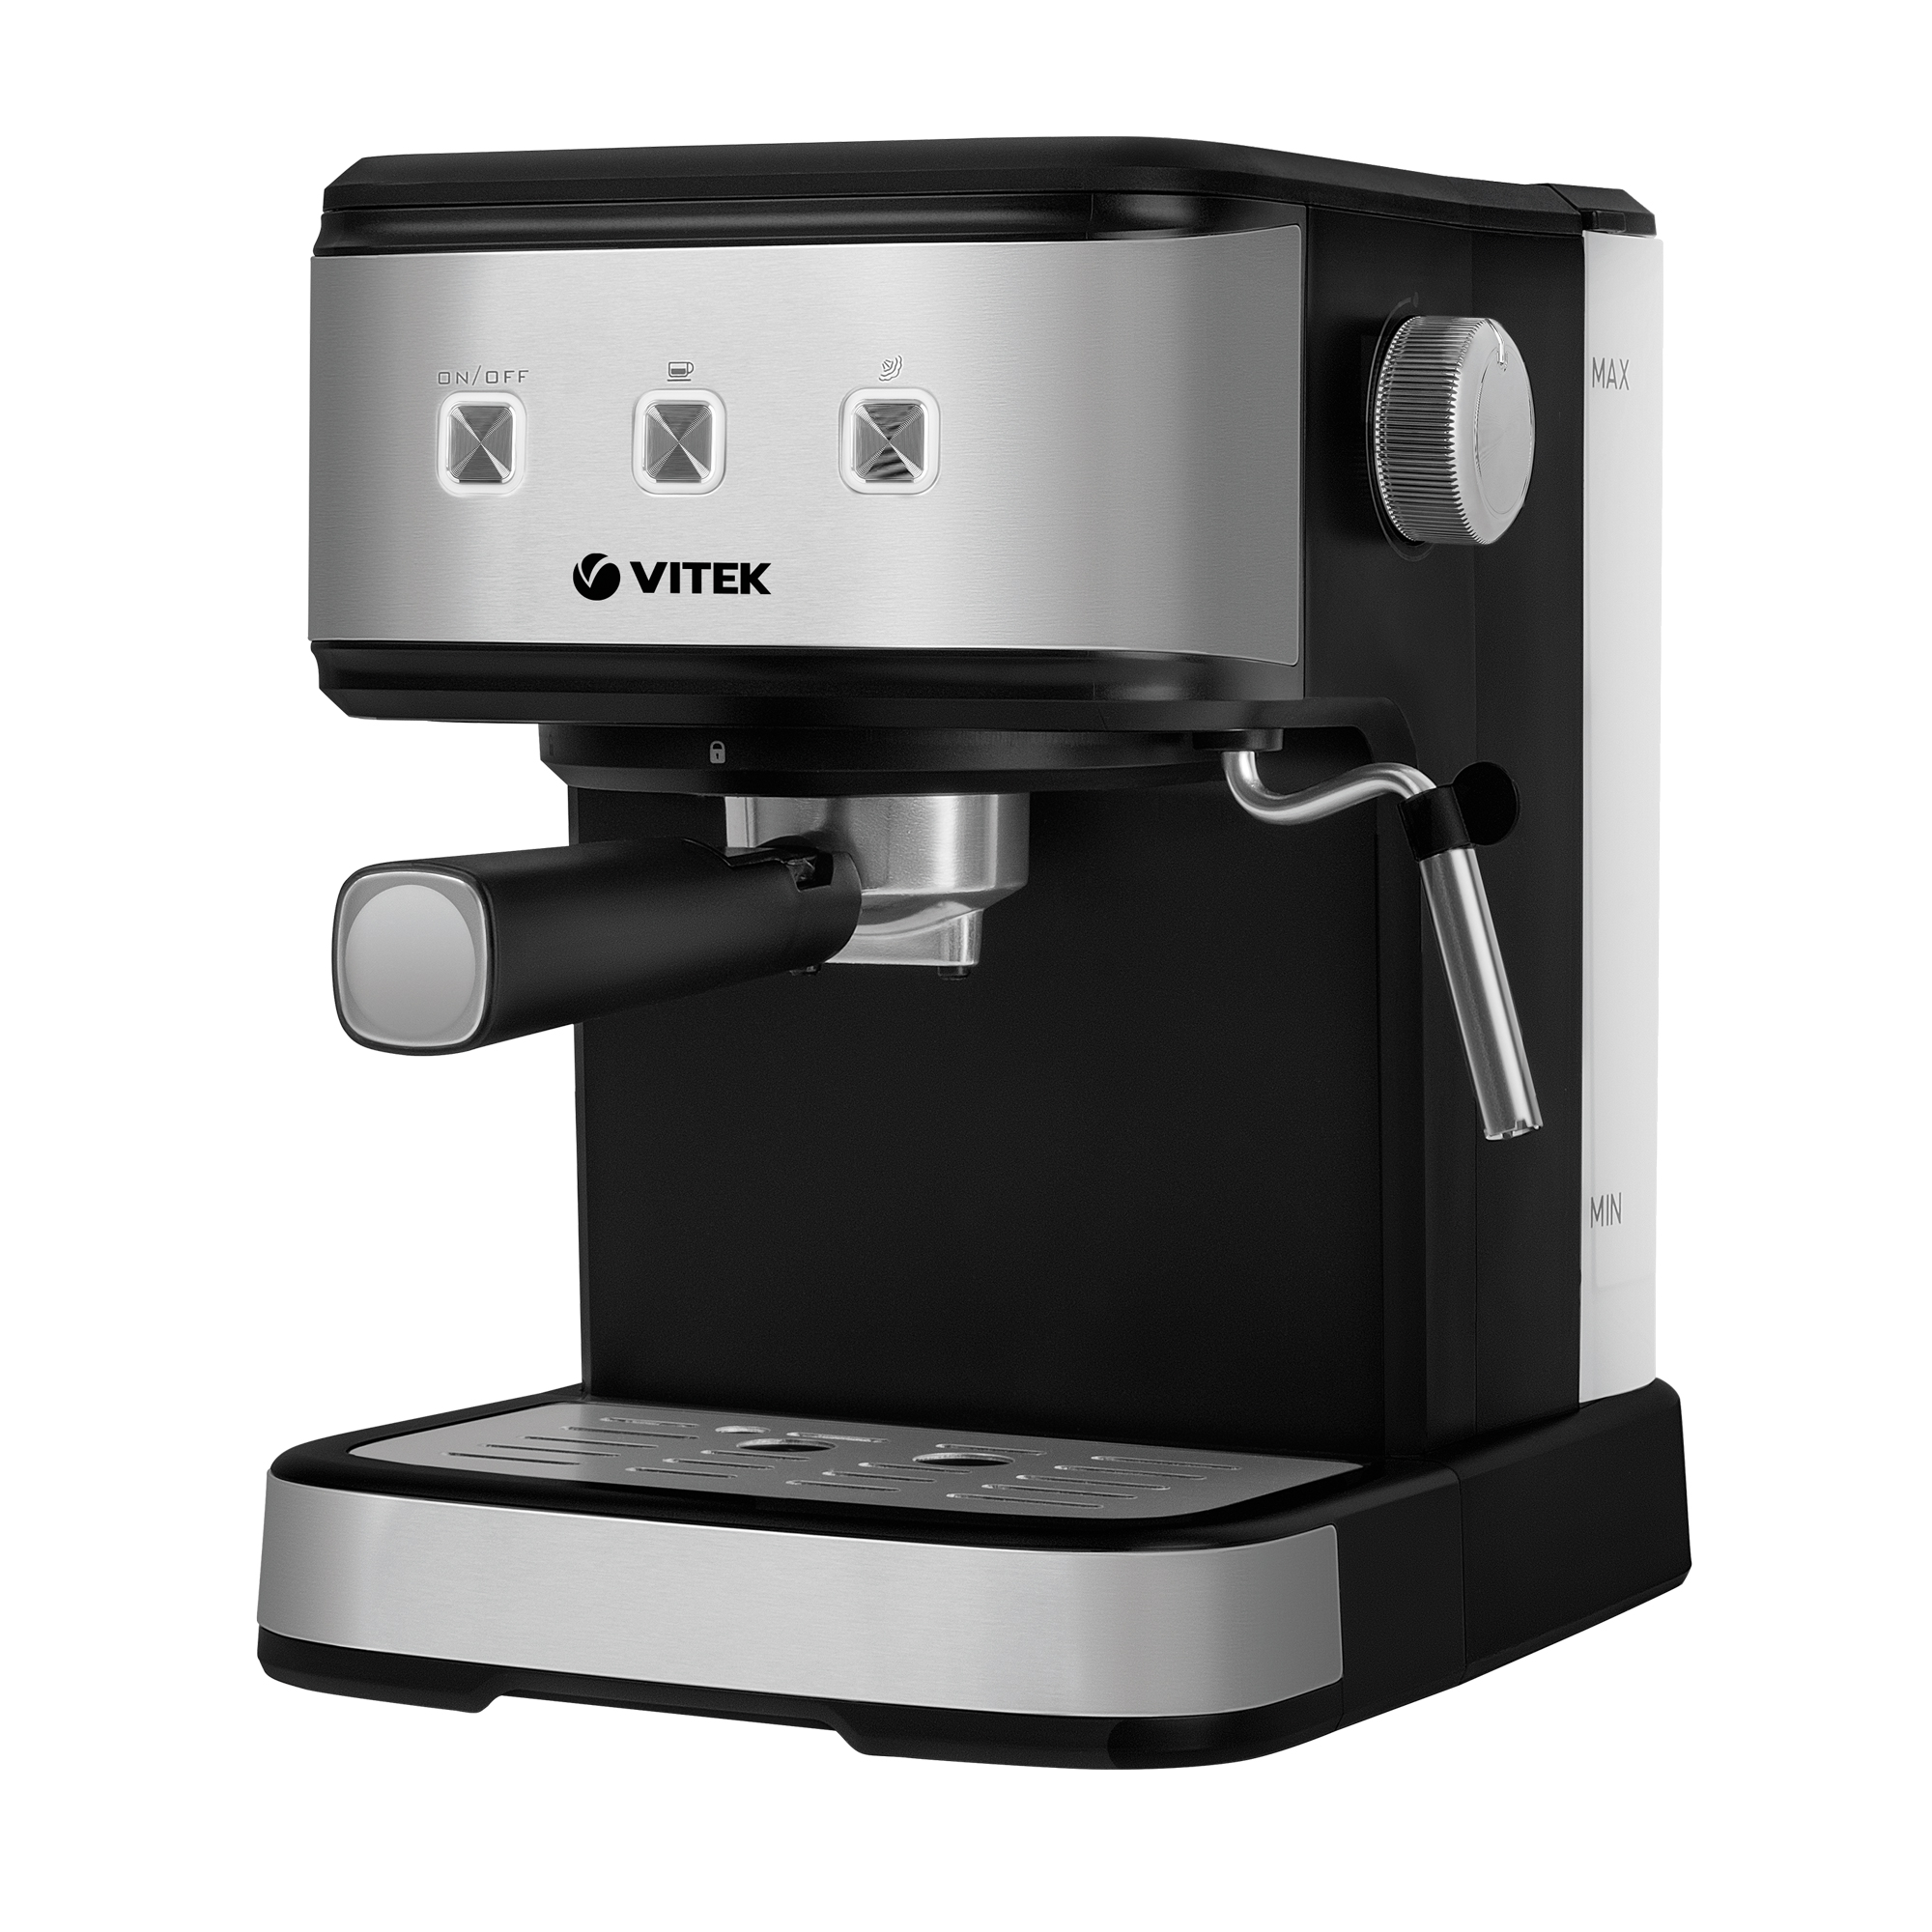 Рожковая кофеварка VITEK VT-8471 серый, черный рожковая кофеварка vitek vt 1510